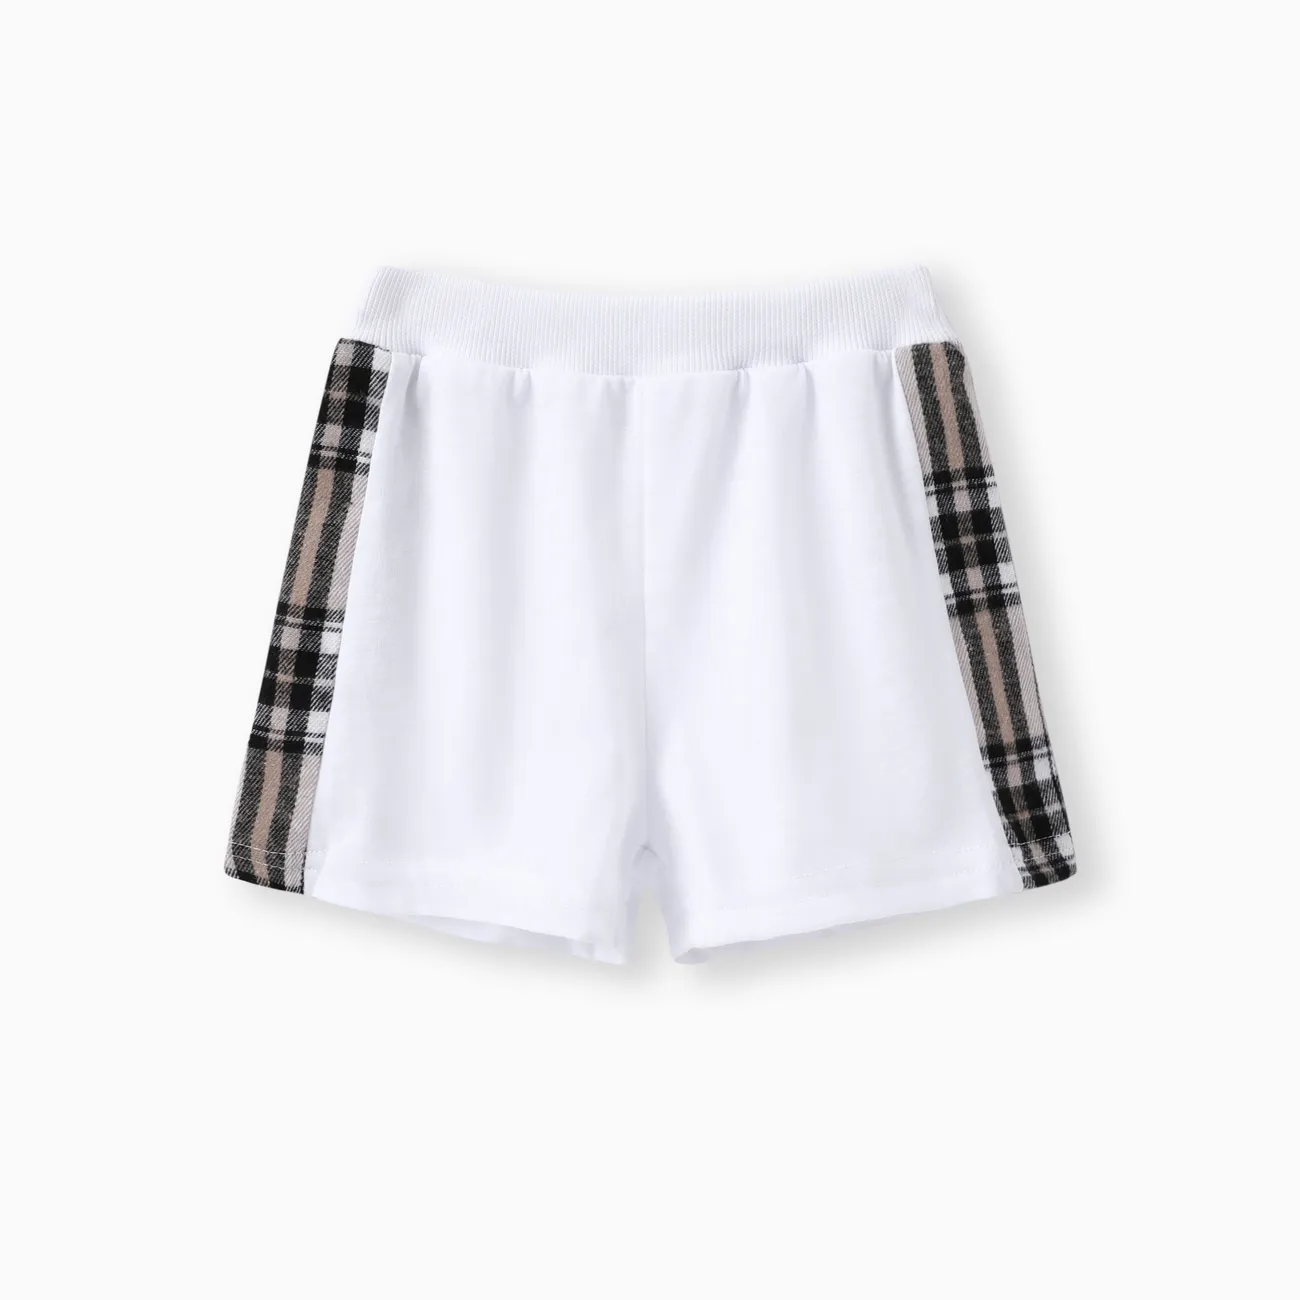 2pcs Baby Boy Plaid Bear Graphic Short-sleeve Tee & Shorts Set White big image 1